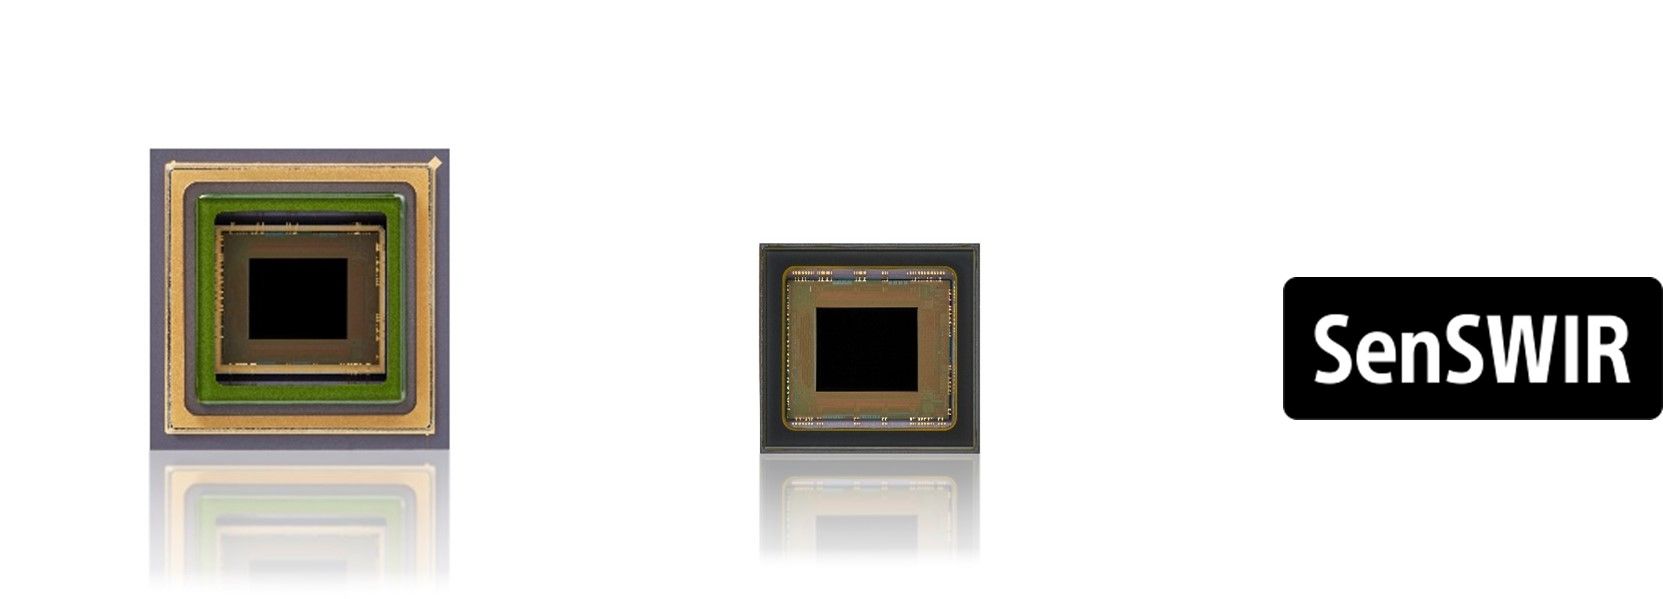 SWIR-Bildsensor IMX992
Links: Keramisches PGA-Gehäuse mit integrierter thermoelektrischer Kühlung
Rechts: Keramisches LGA-Gehäuse